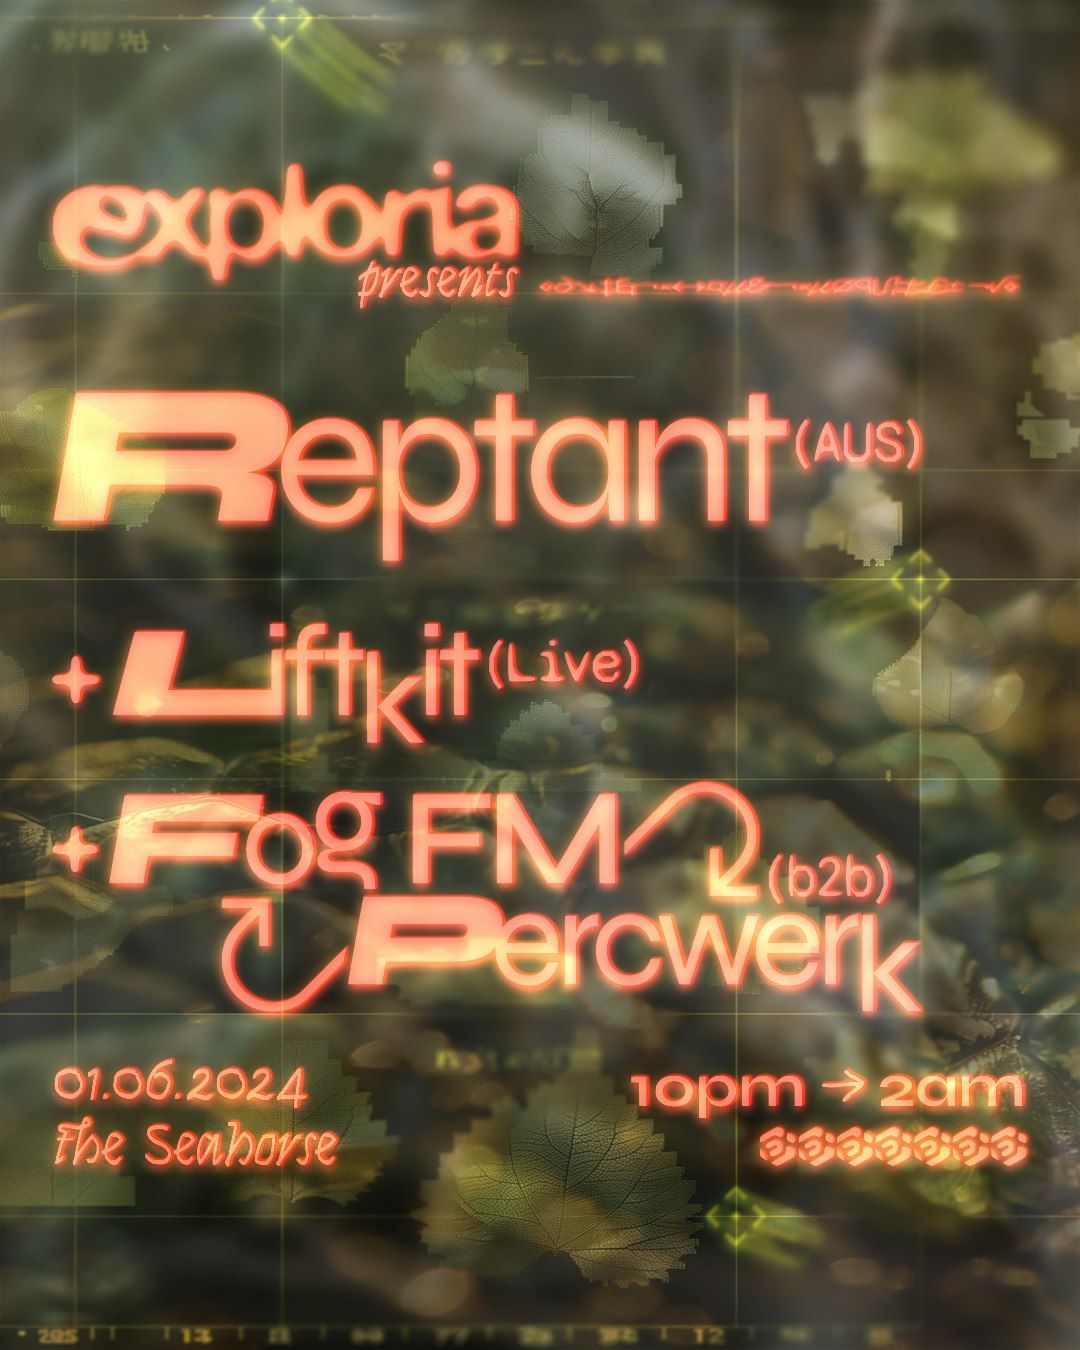 EXPLORIA: Reptant \/\/ Liftkit \/\/ Fog FM & Percwerk